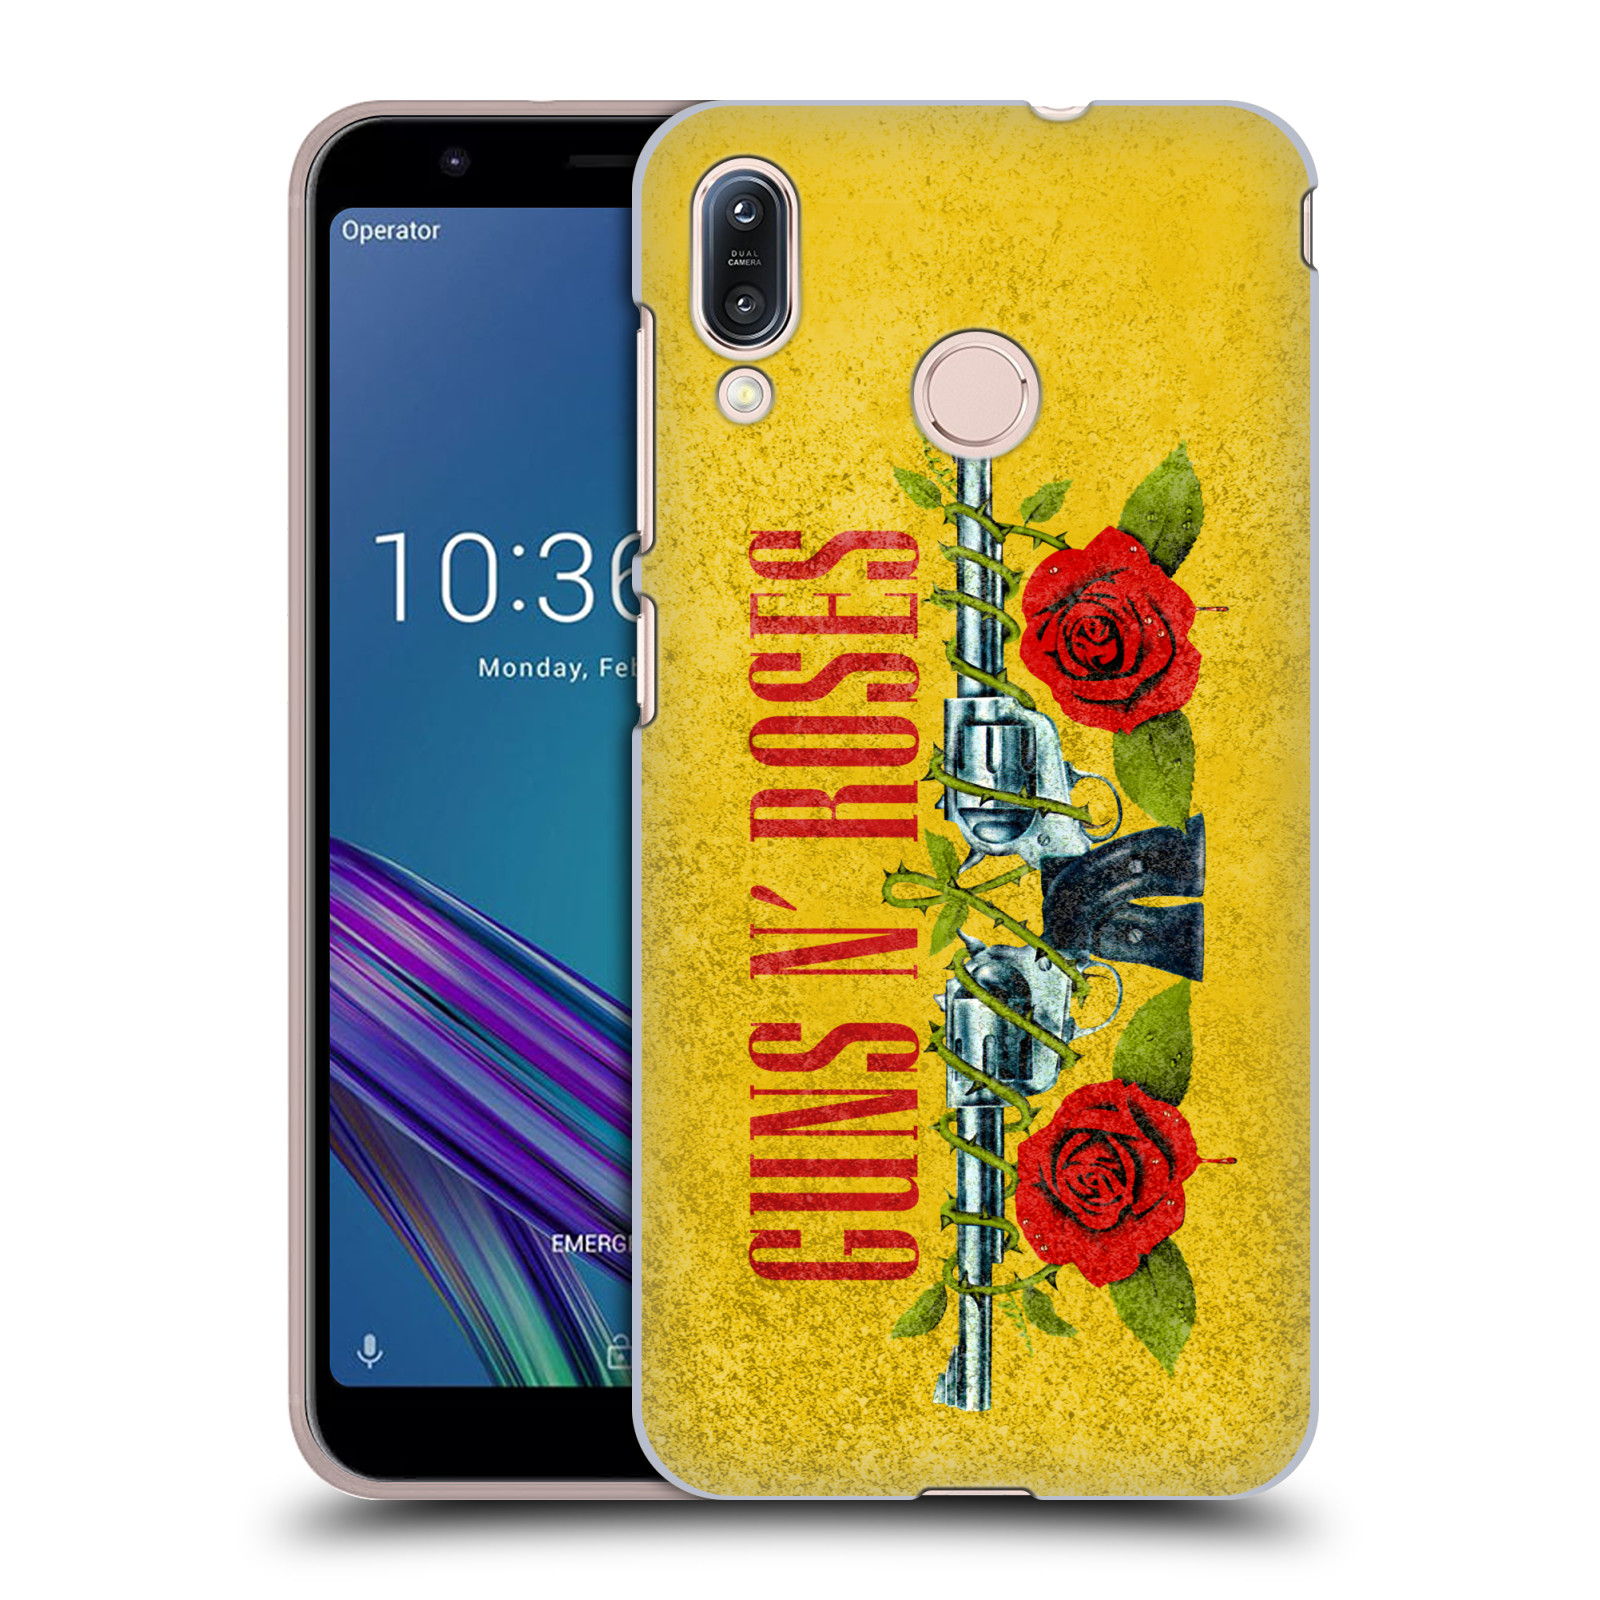 Pouzdro na mobil Asus Zenfone Max M1 (ZB555KL) - HEAD CASE - hudební skupina Guns N Roses pistole a růže žluté pozadí